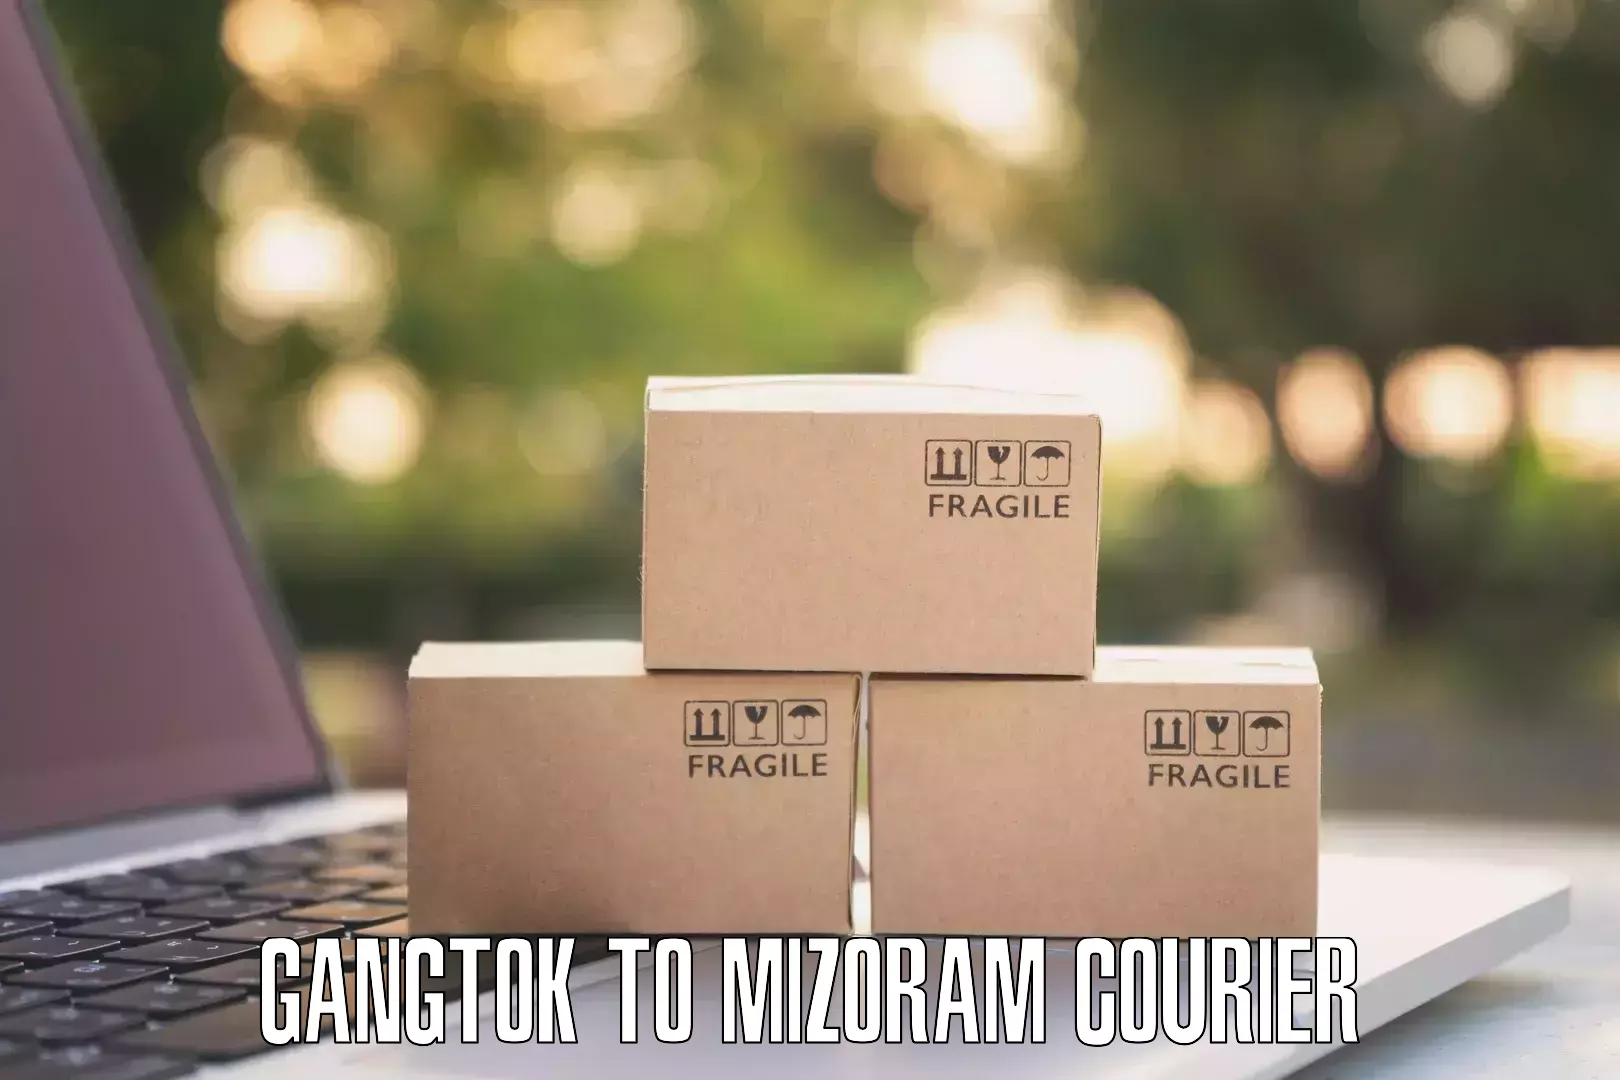 Premium delivery services Gangtok to Mizoram